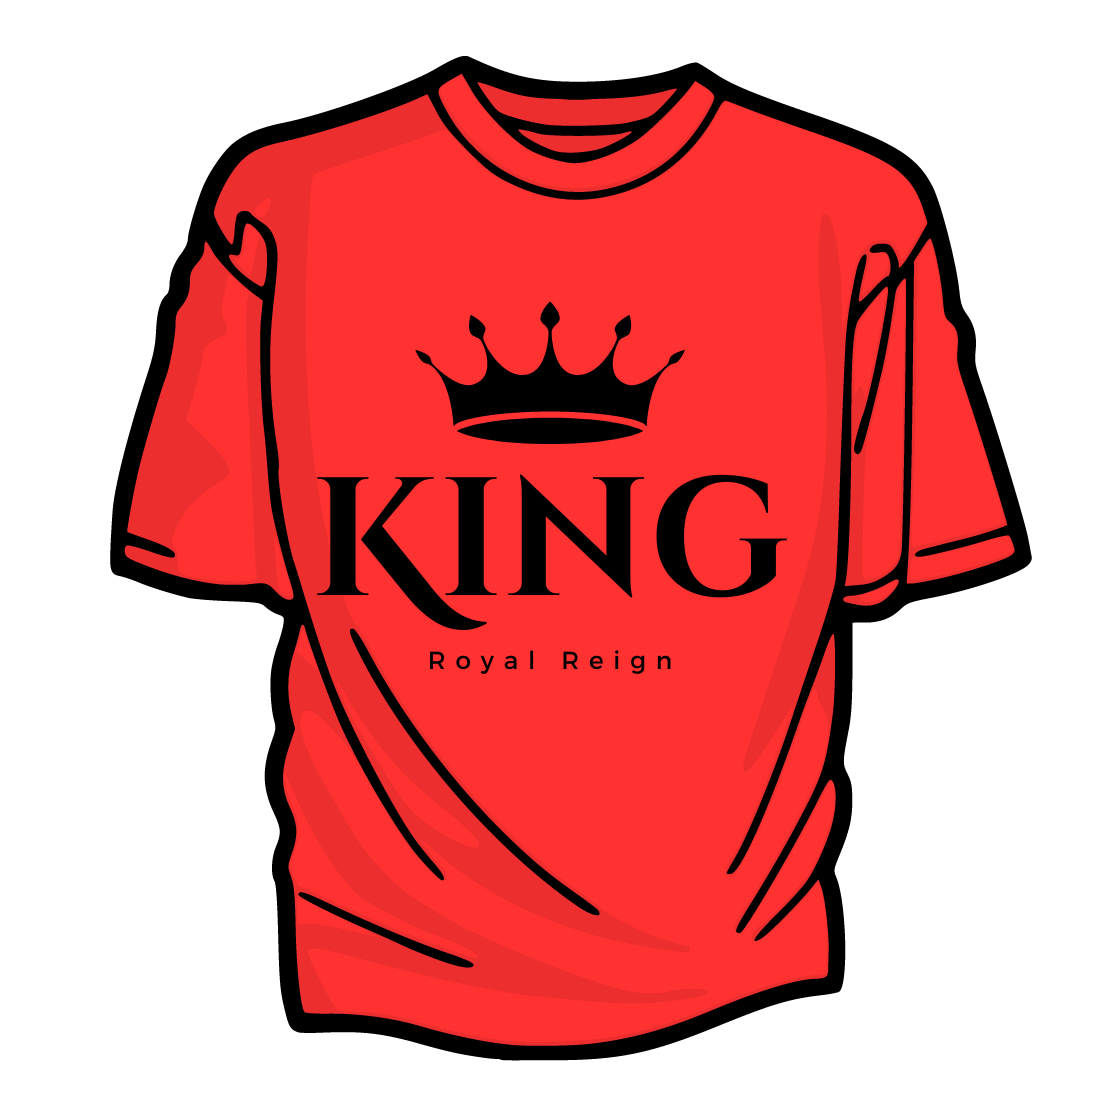 Royal Exquisite Emblem T-Shirts Design cover image.